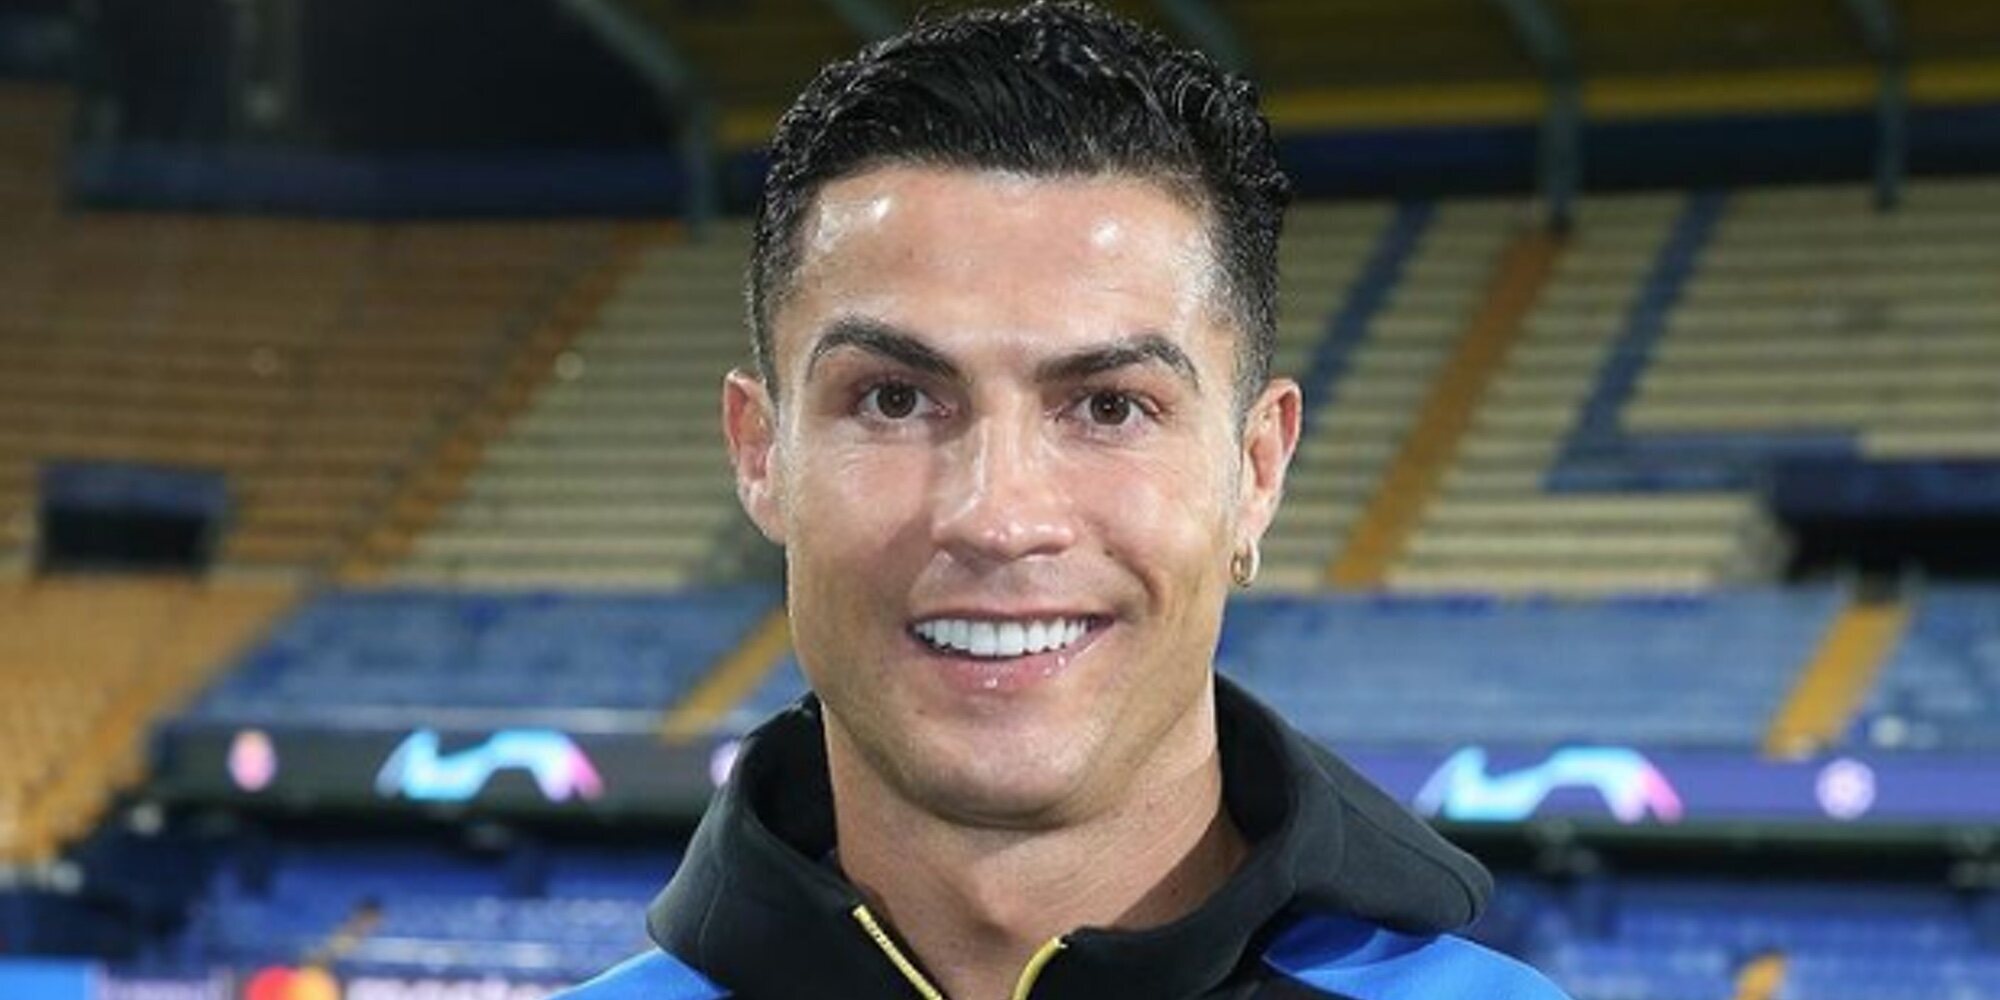 El negocio de Cristiano Ronaldo que se ha ido a pique 15 años después de abrir